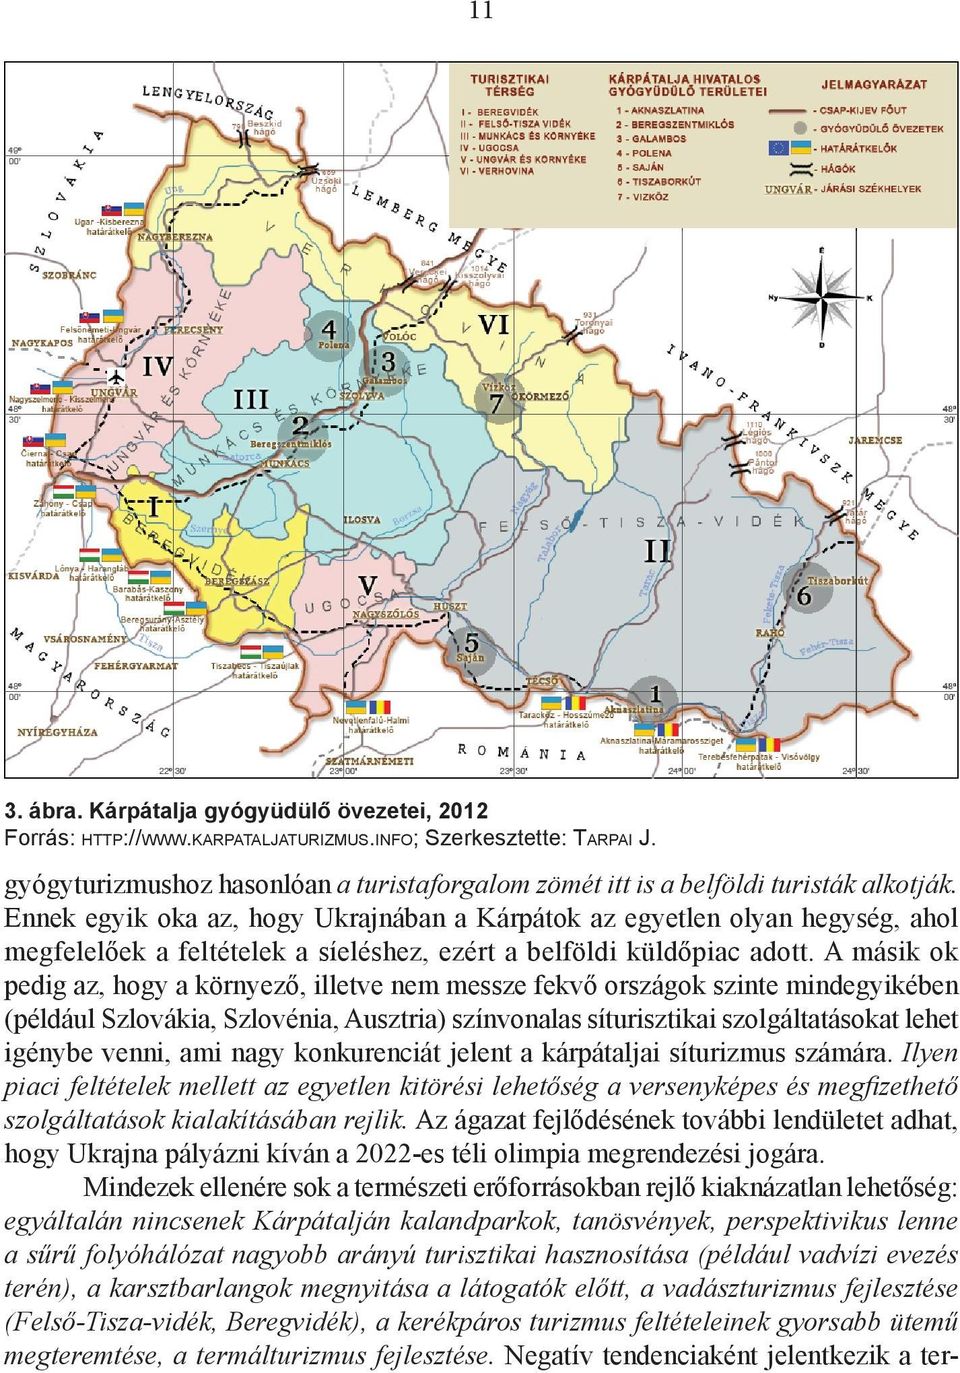 Ennek egyik oka az, hogy Ukrajnában a Kárpátok az egyetlen olyan hegység, ahol megfelelőek a feltételek a síeléshez, ezért a belföldi küldőpiac adott.